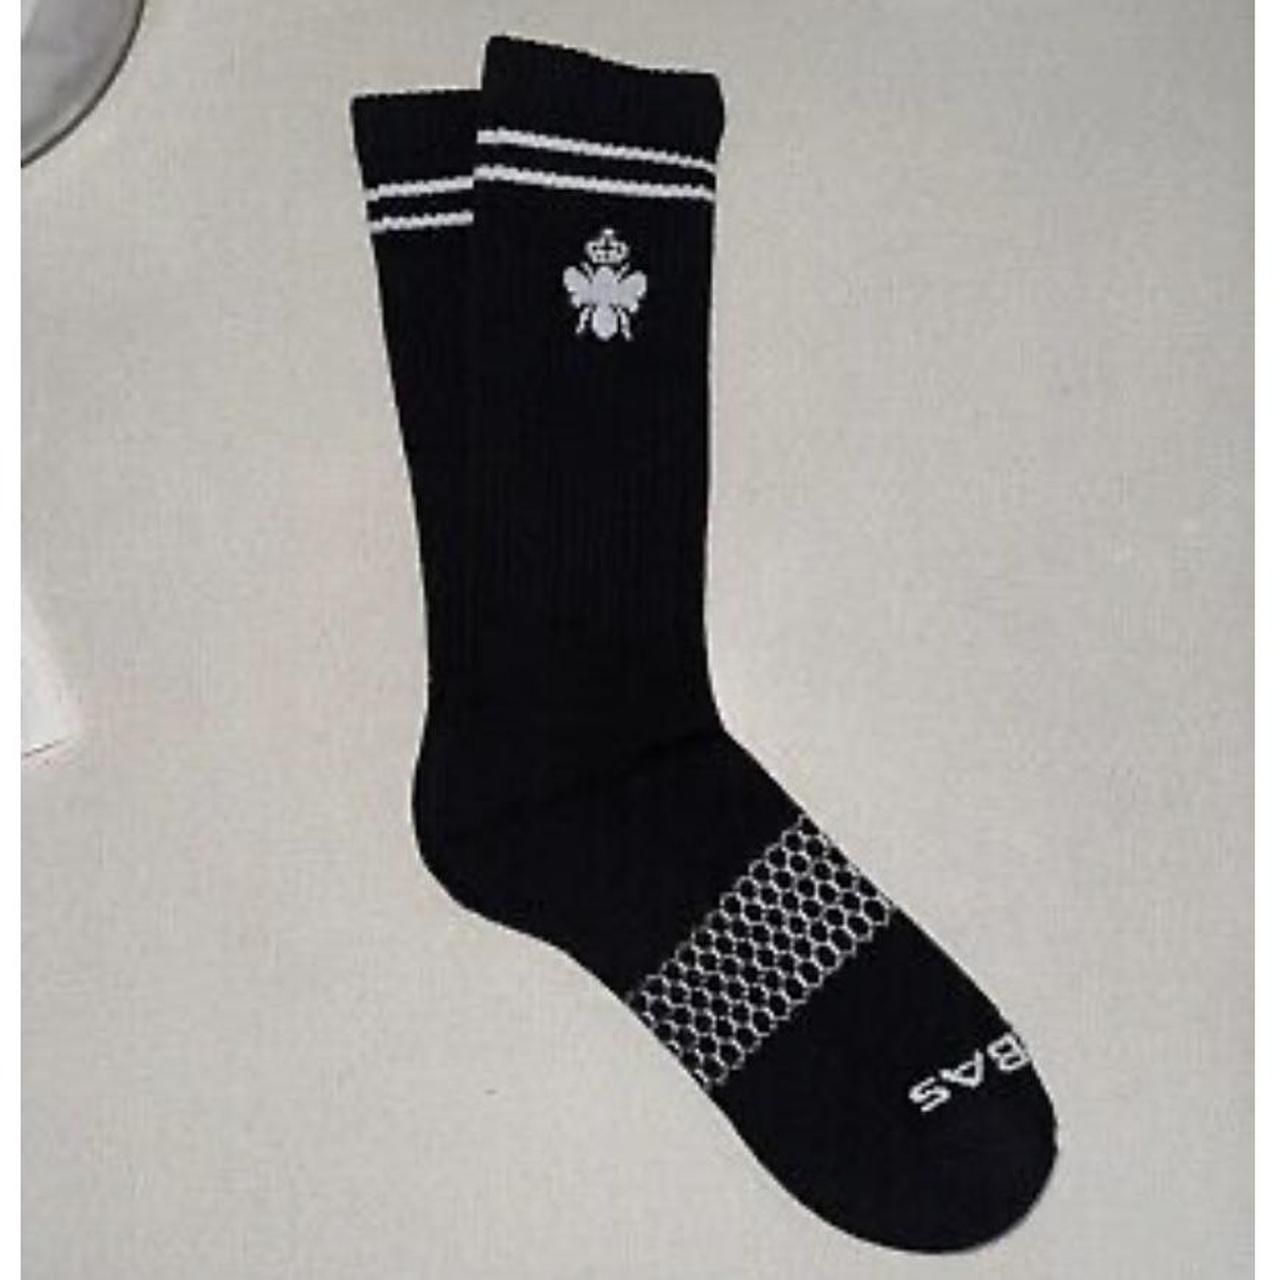 Bombas Men's Black and White Socks (3)